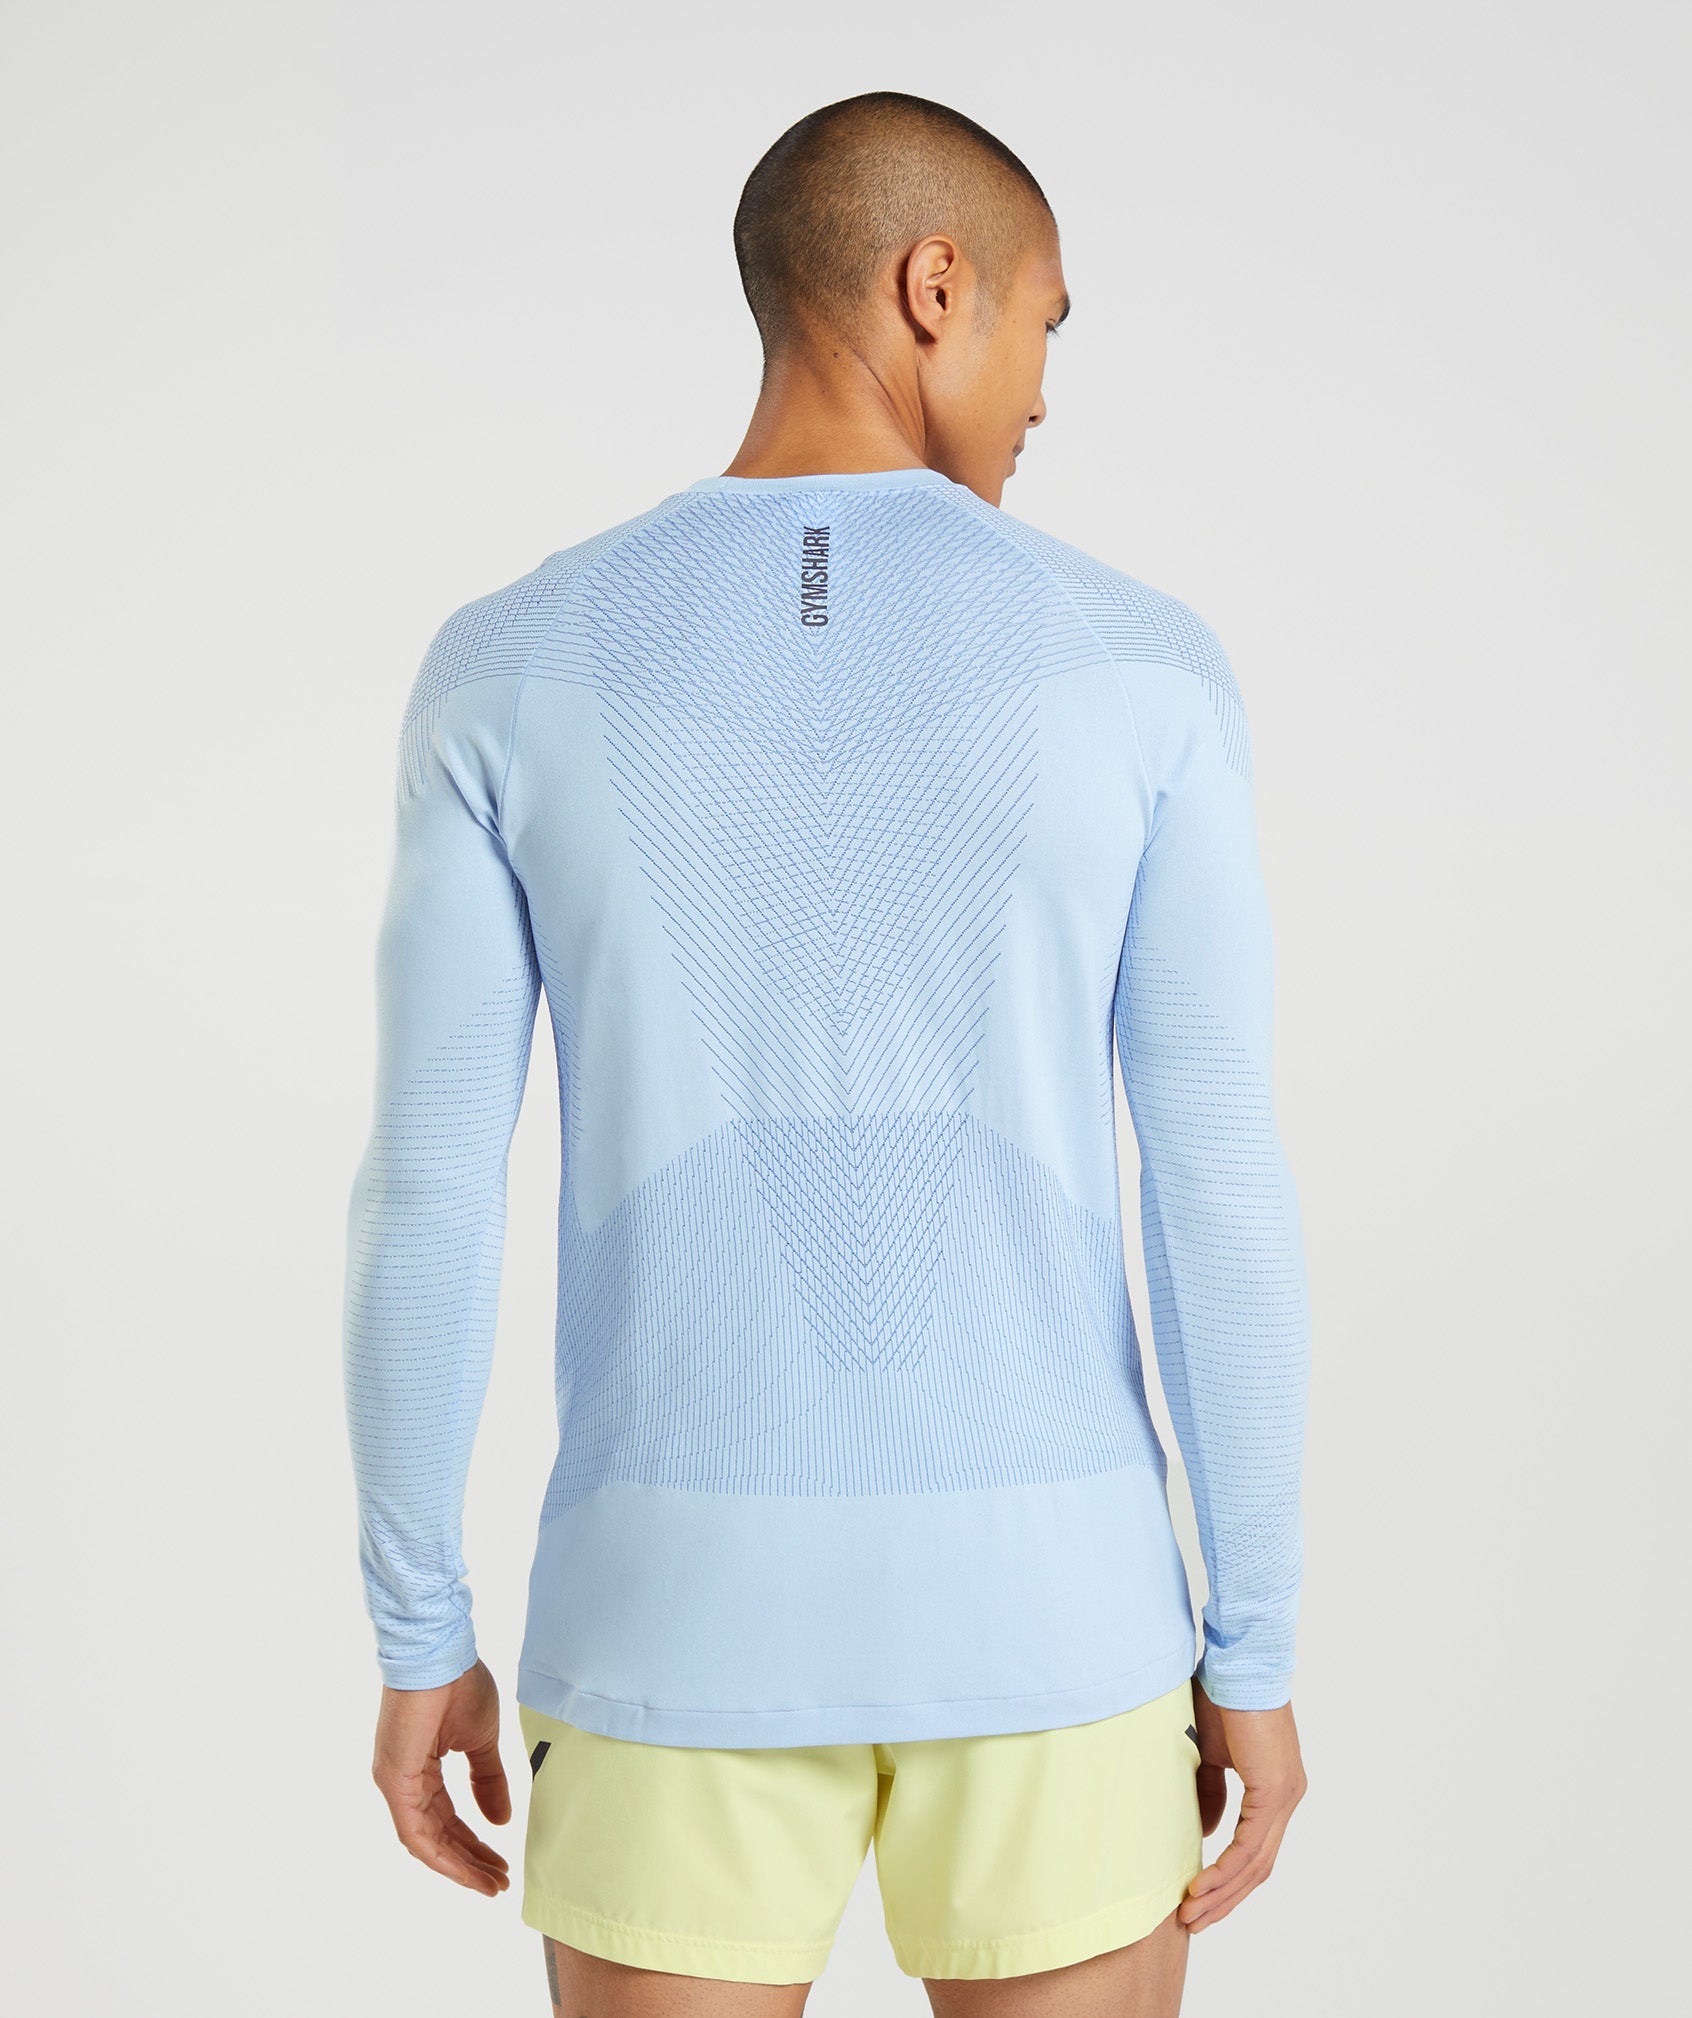 Apex Seamless Long Sleeve T-Shirt in Linen Blue/Court Blue - view 2